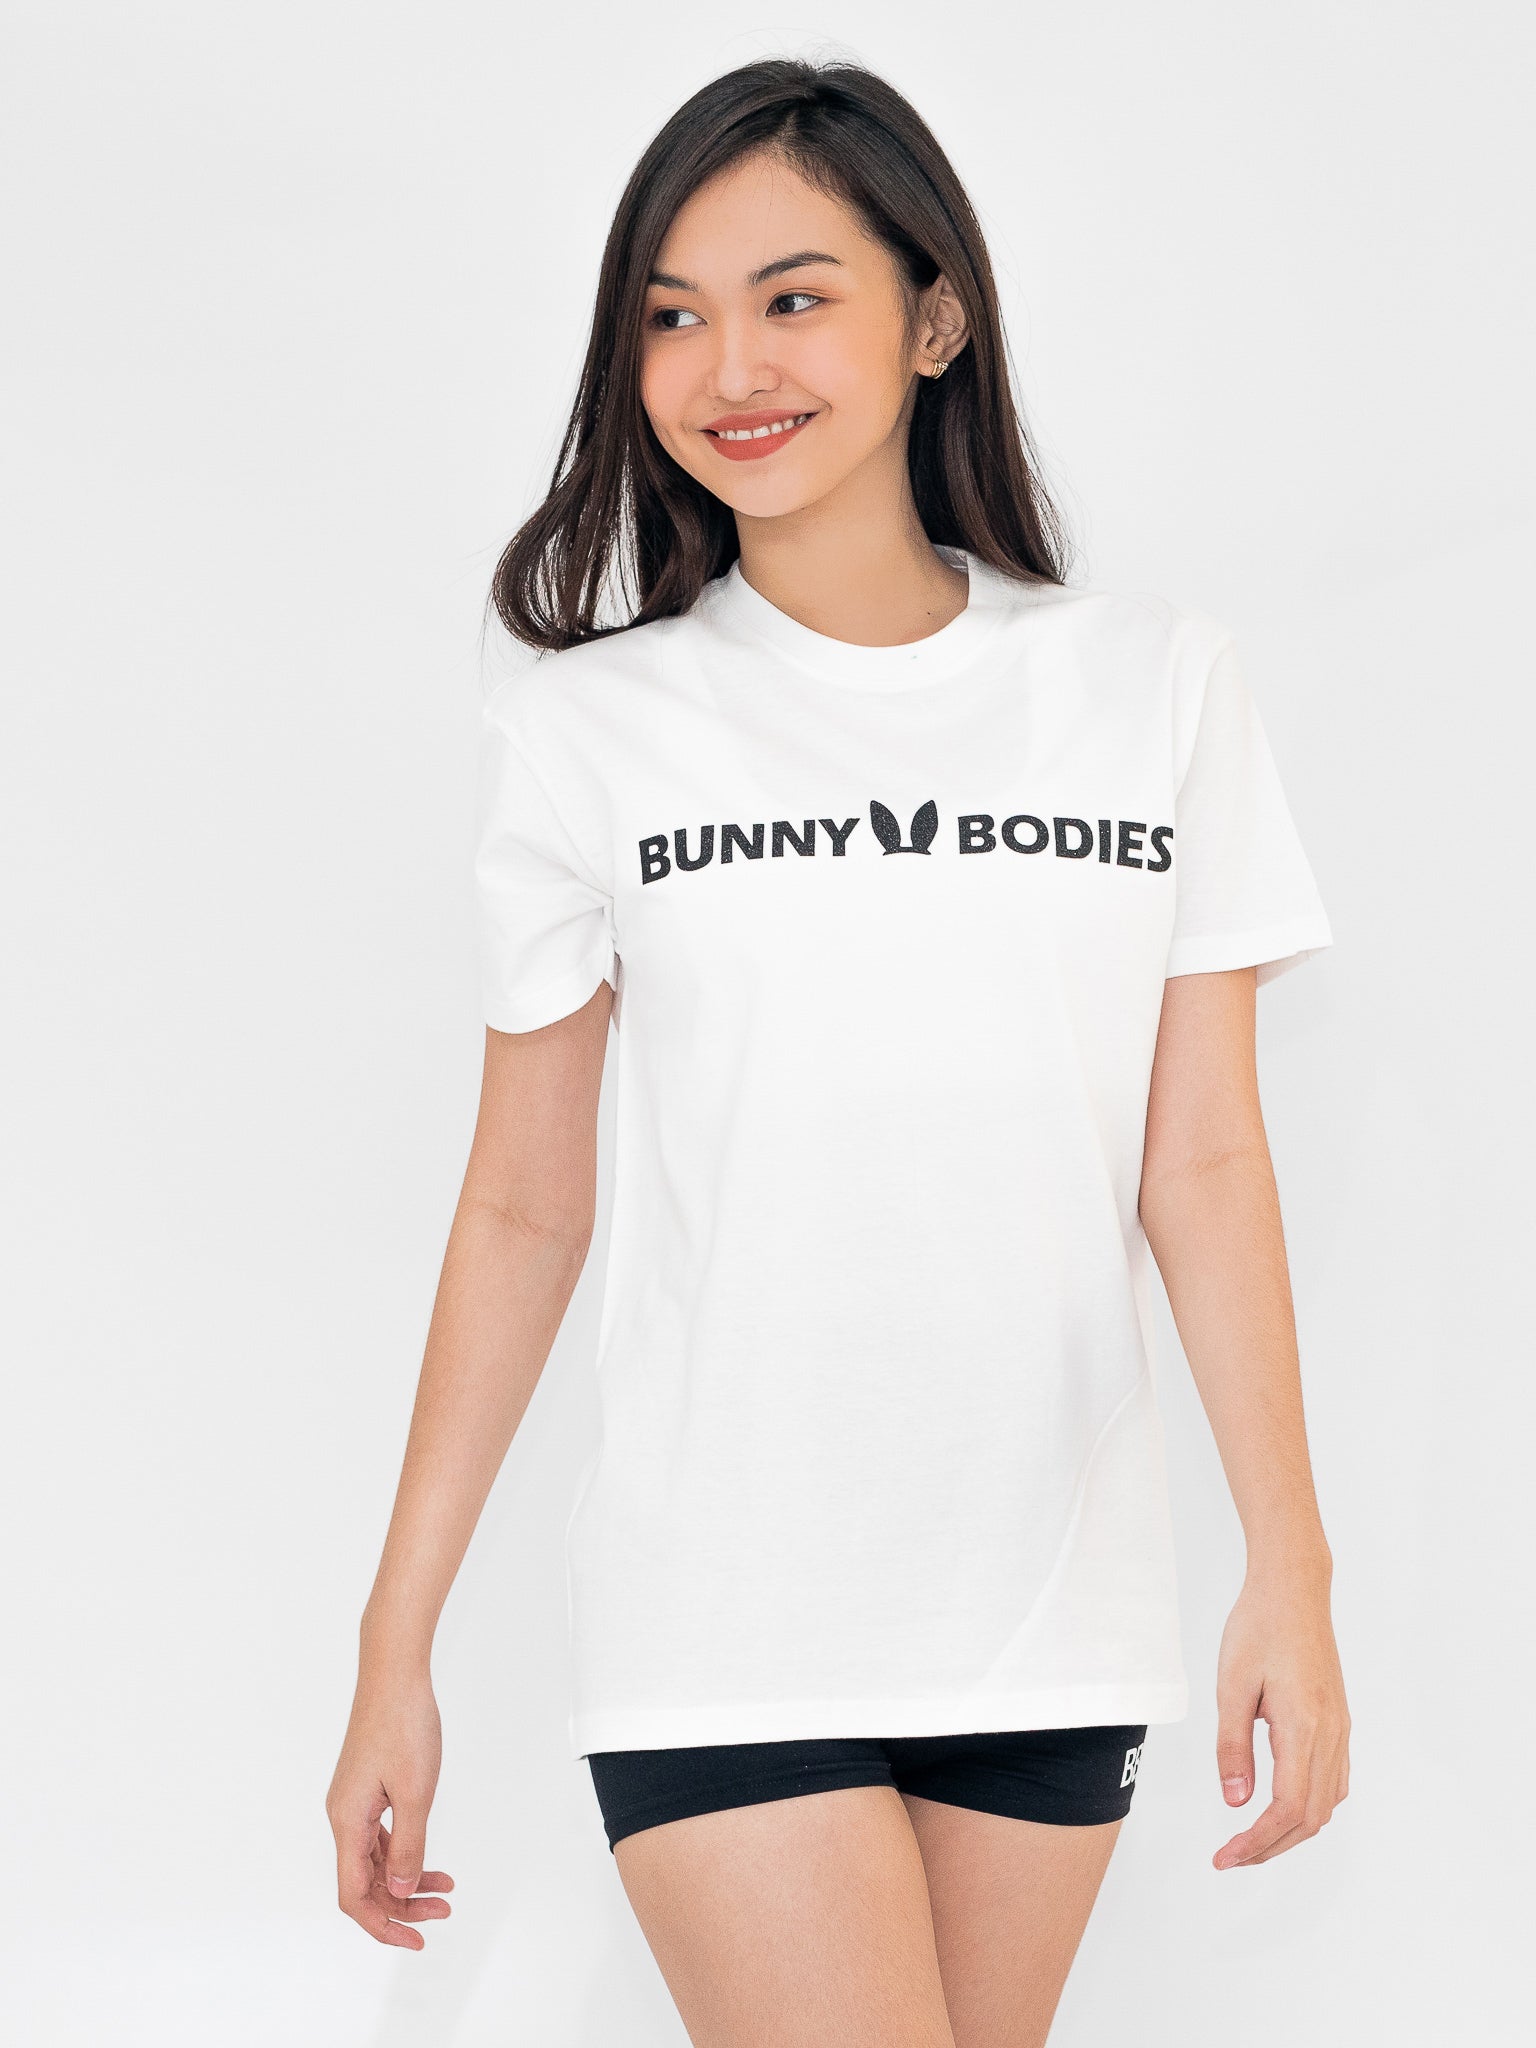 Bunny Bodies Rainbow Sparkle Shirt